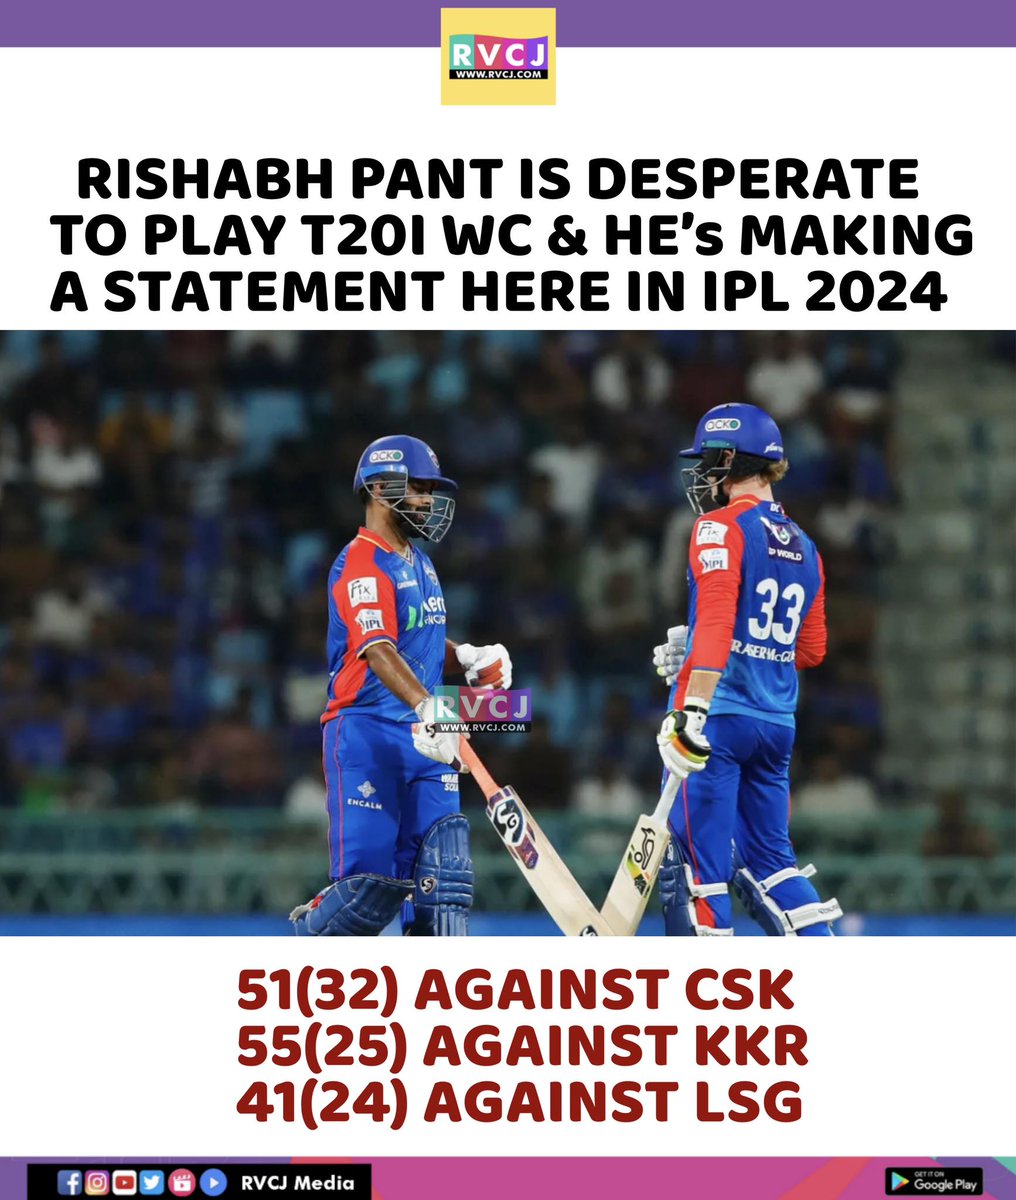 Rishabh pant